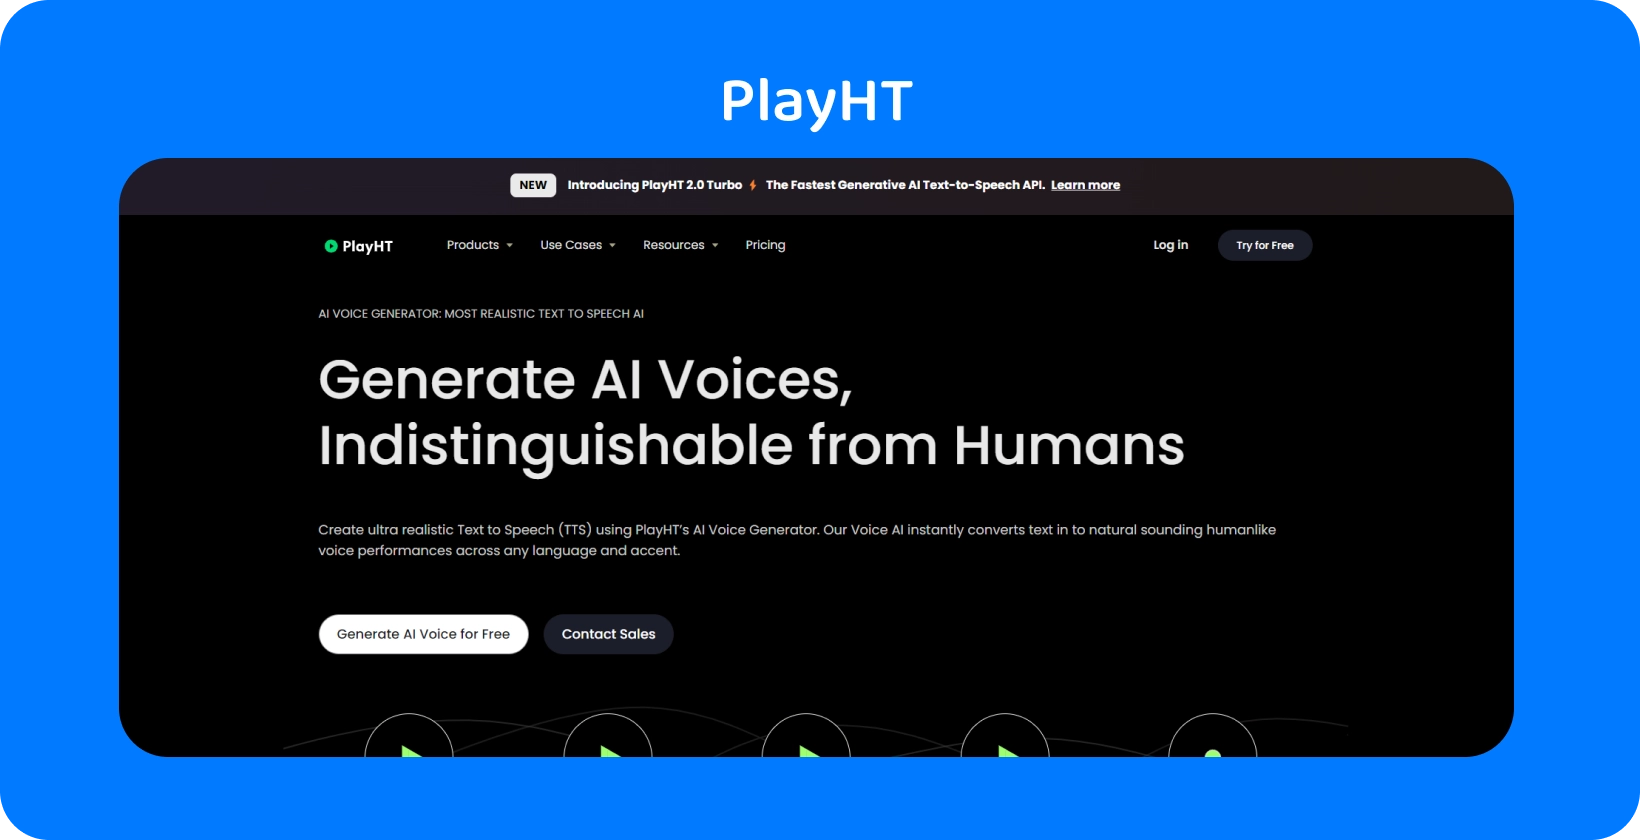 PlayHT 提供 AI 生成的声音，与人类语音几乎没有区别，可满足文本转语音的需求。